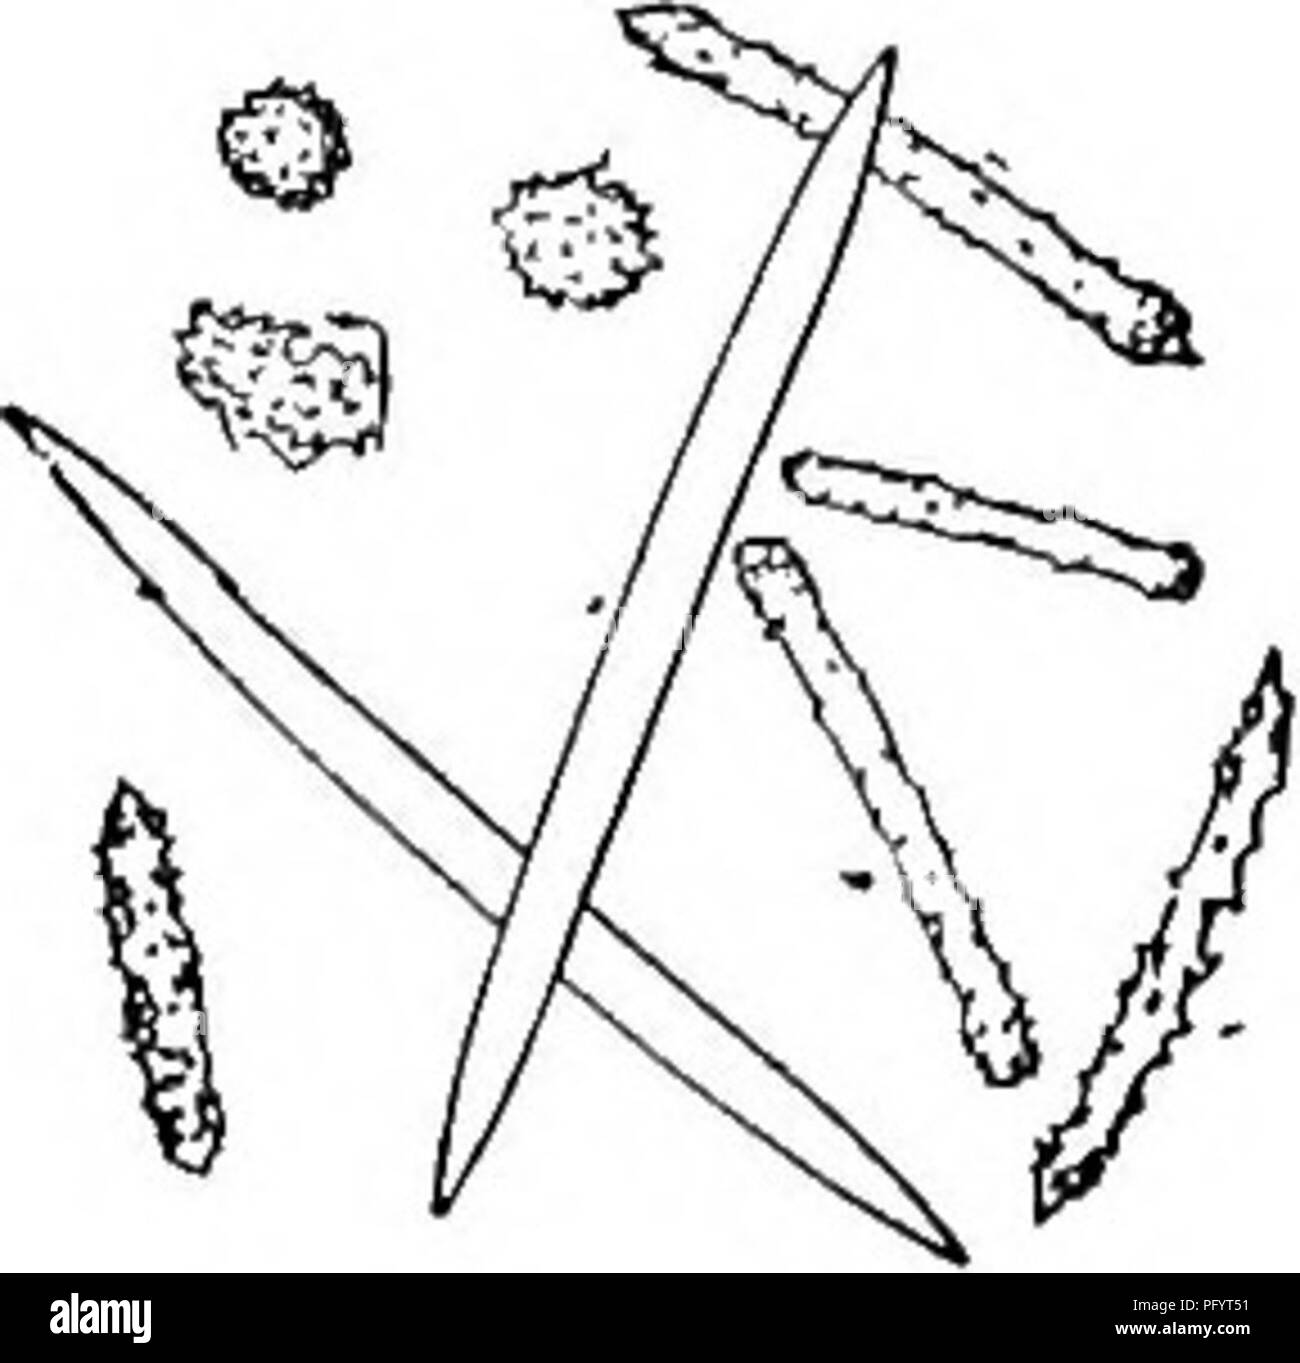 . Süßwasser-Biologie. Süßwasser-Biologie. Abb. 562. Spongilla fragilis. A. in der Partie der Gruppe von gemmules; a, gebogene foraminalen Tubuli, immer-Station; ft, Umhüllen mit acerate sjjicules. X12. 5. Drei Arten von spicules hier dargestellt; Skelett spicules, glatt, abrupt hingewiesen; variable parenchymal spicules, subcylindrical, subspined; spined, sphärischen Formen häufig, den ganzen Arten gesehen. X loo. (Nach Potts.) 8 (7) die Tubuli der tlie gemmules nach innen gedreht in Gruppen. Spongilla igloviformis Potts 1887. Schwamm Braun, dünn, INKRUSTIERENDE. Halbkugelförmige Gemmules in kompakten Gruppen von acht t Stockfoto